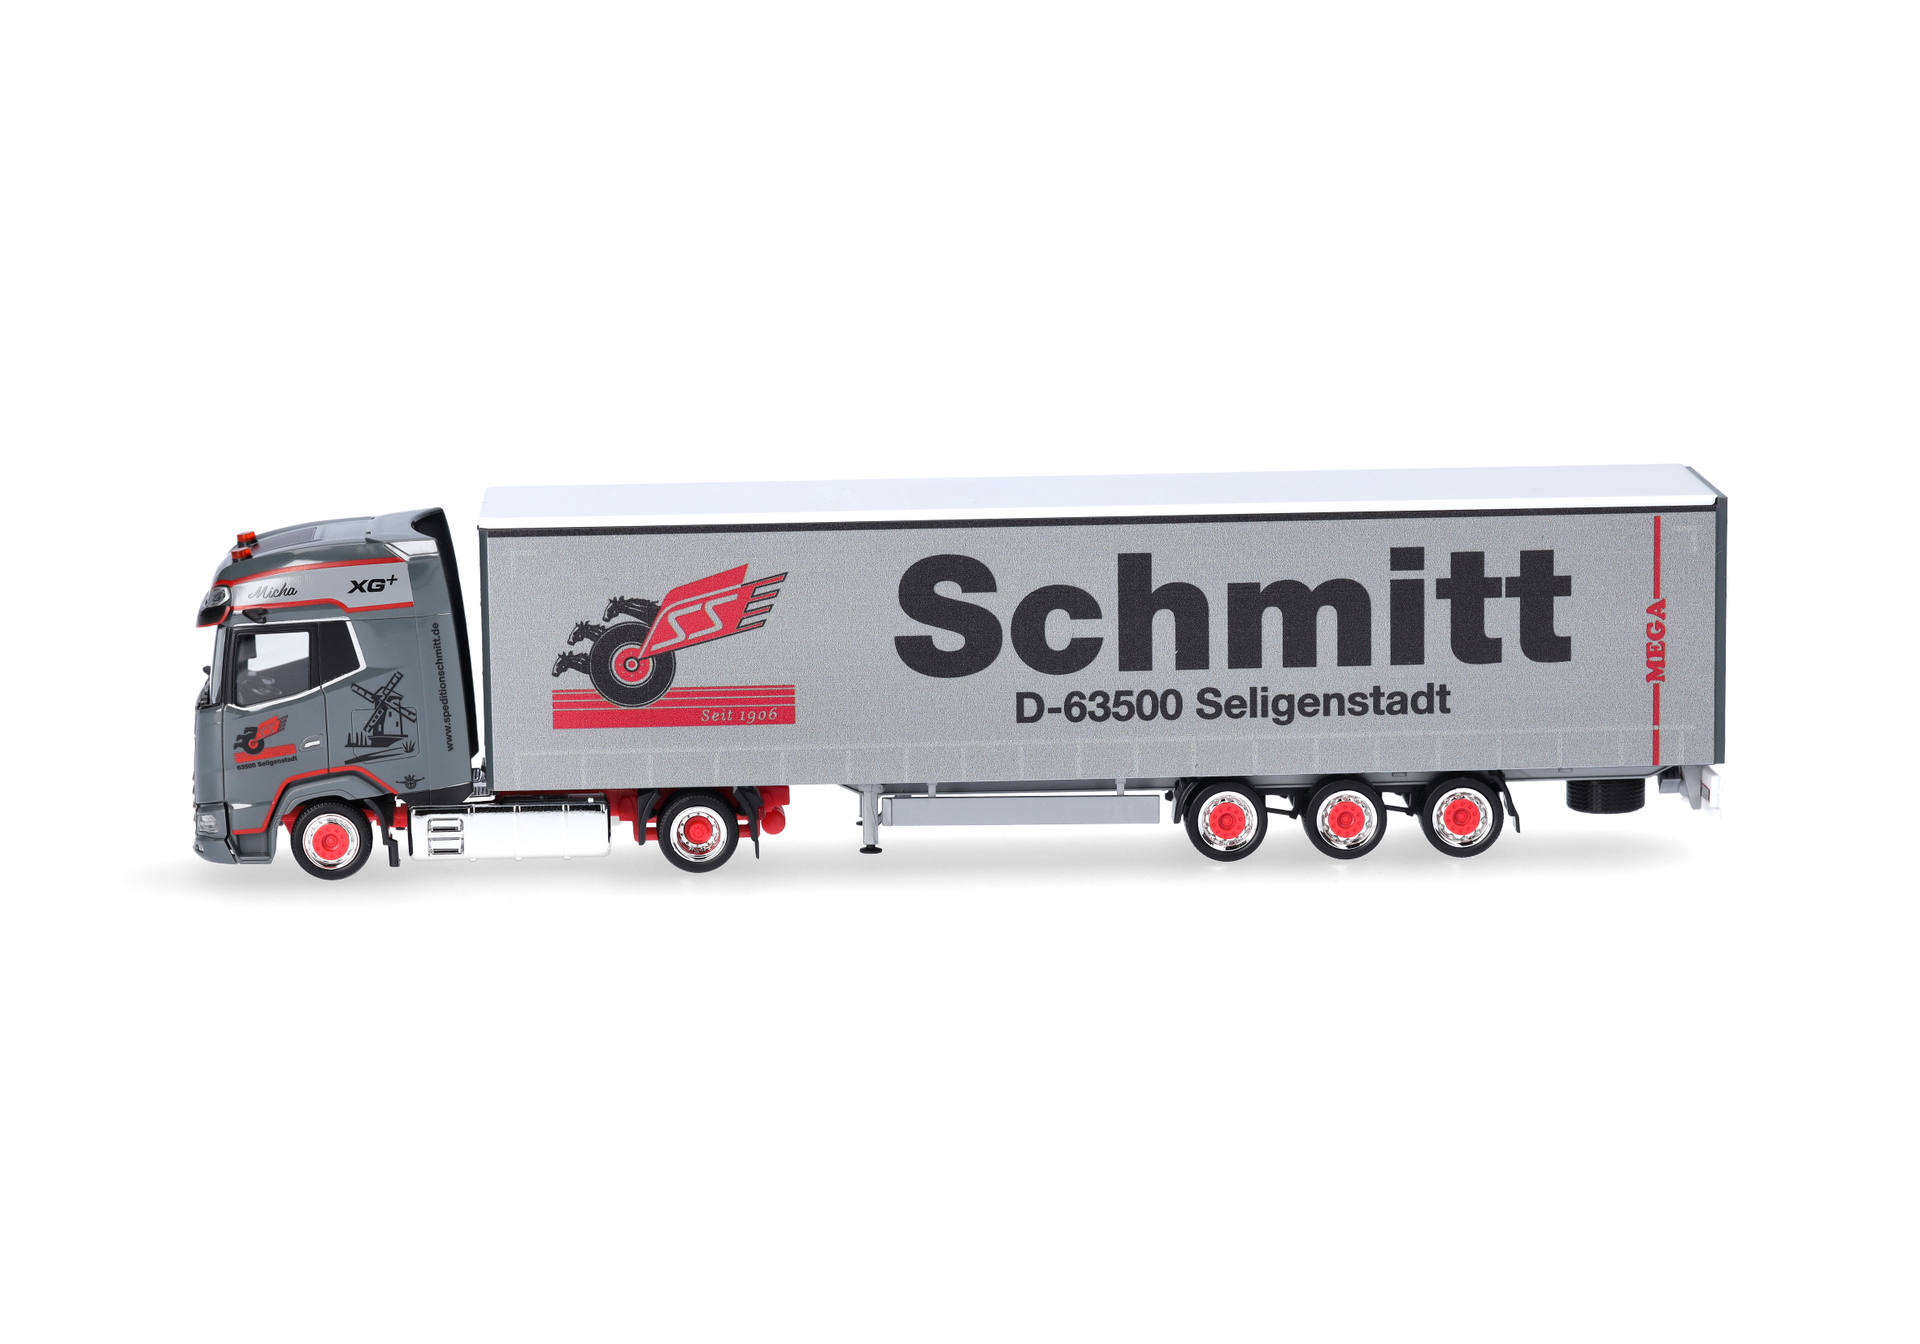 DAF XG+ volume semitrailer "Schmitt Seligenstadt" (Hesse/Seligenstadt)